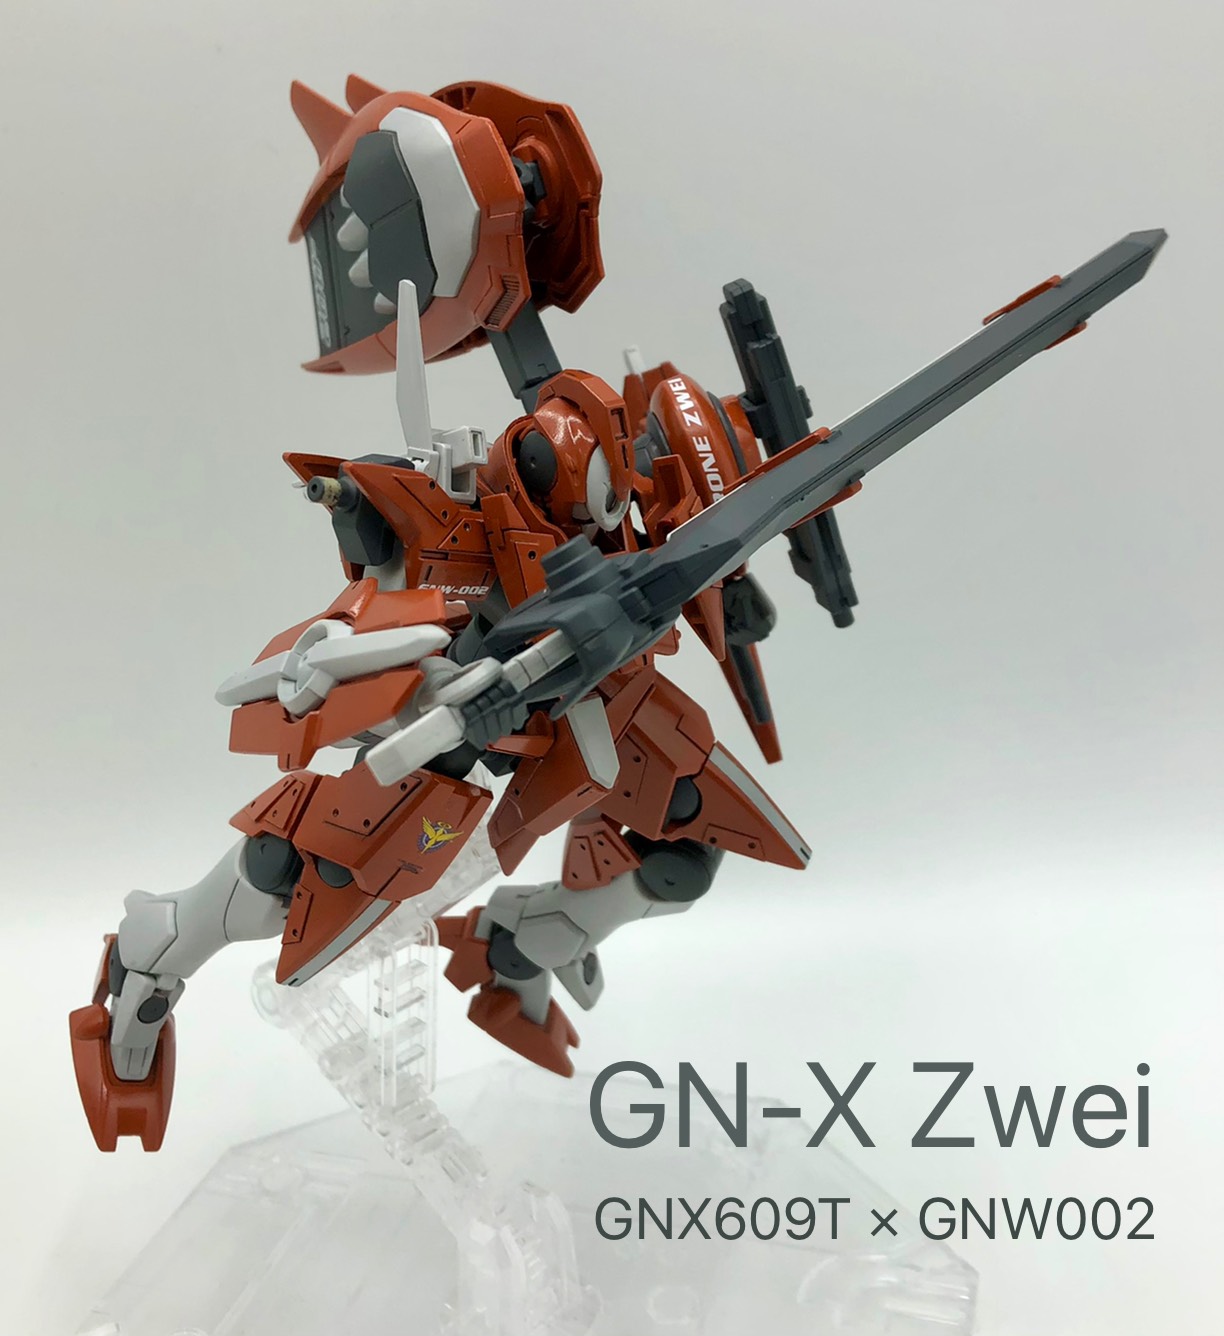 GN-X Zwei